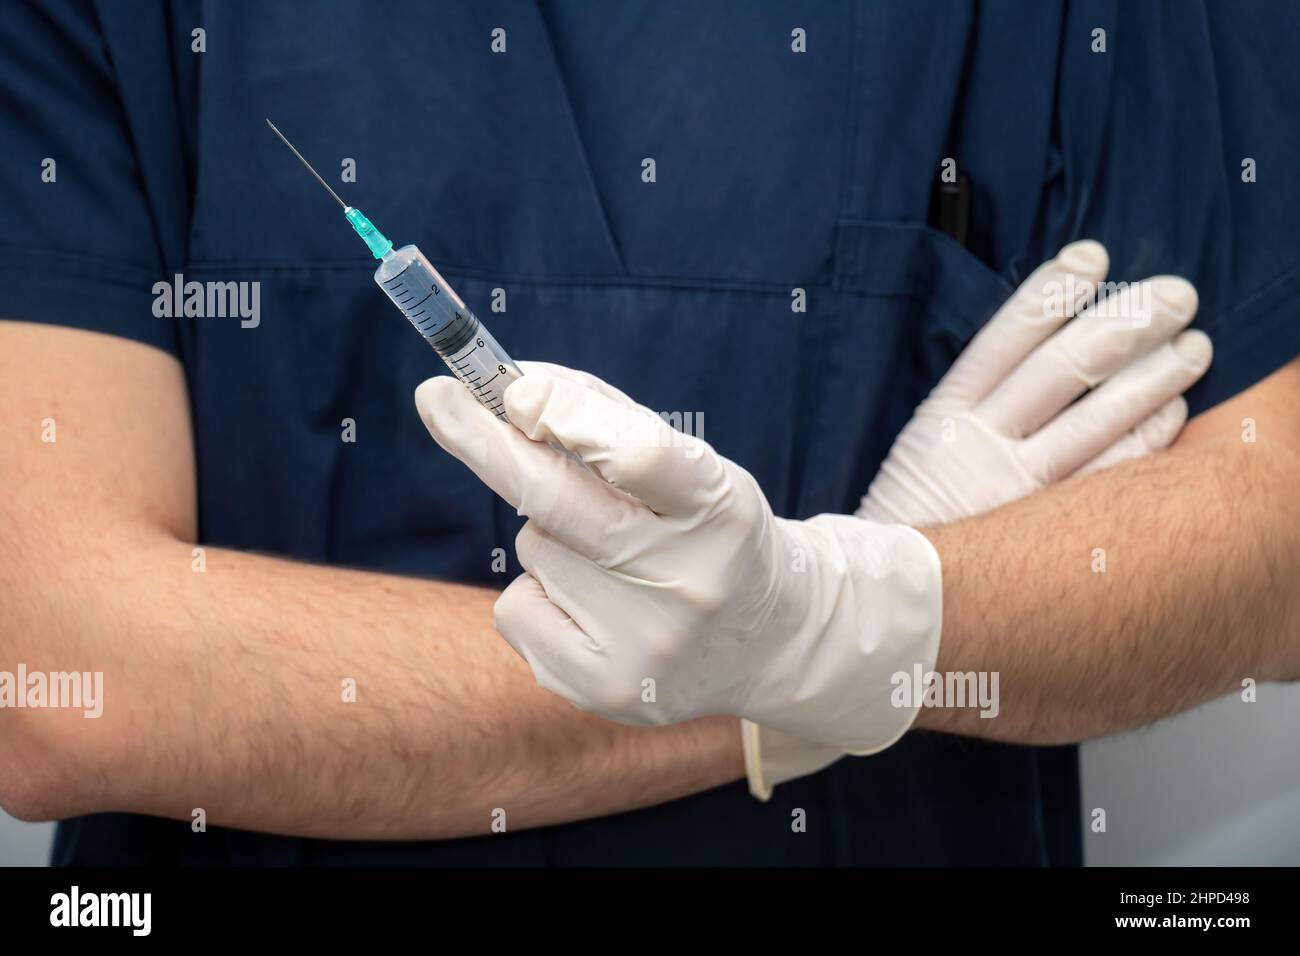 Arzt in medizinischer blauer Uniform mit Einweghandschuh in der Hand, flüssiges Medikament in Spritze mit Nadel. Gesundheitswesen, Behandlung von professionellen phys Stockfoto